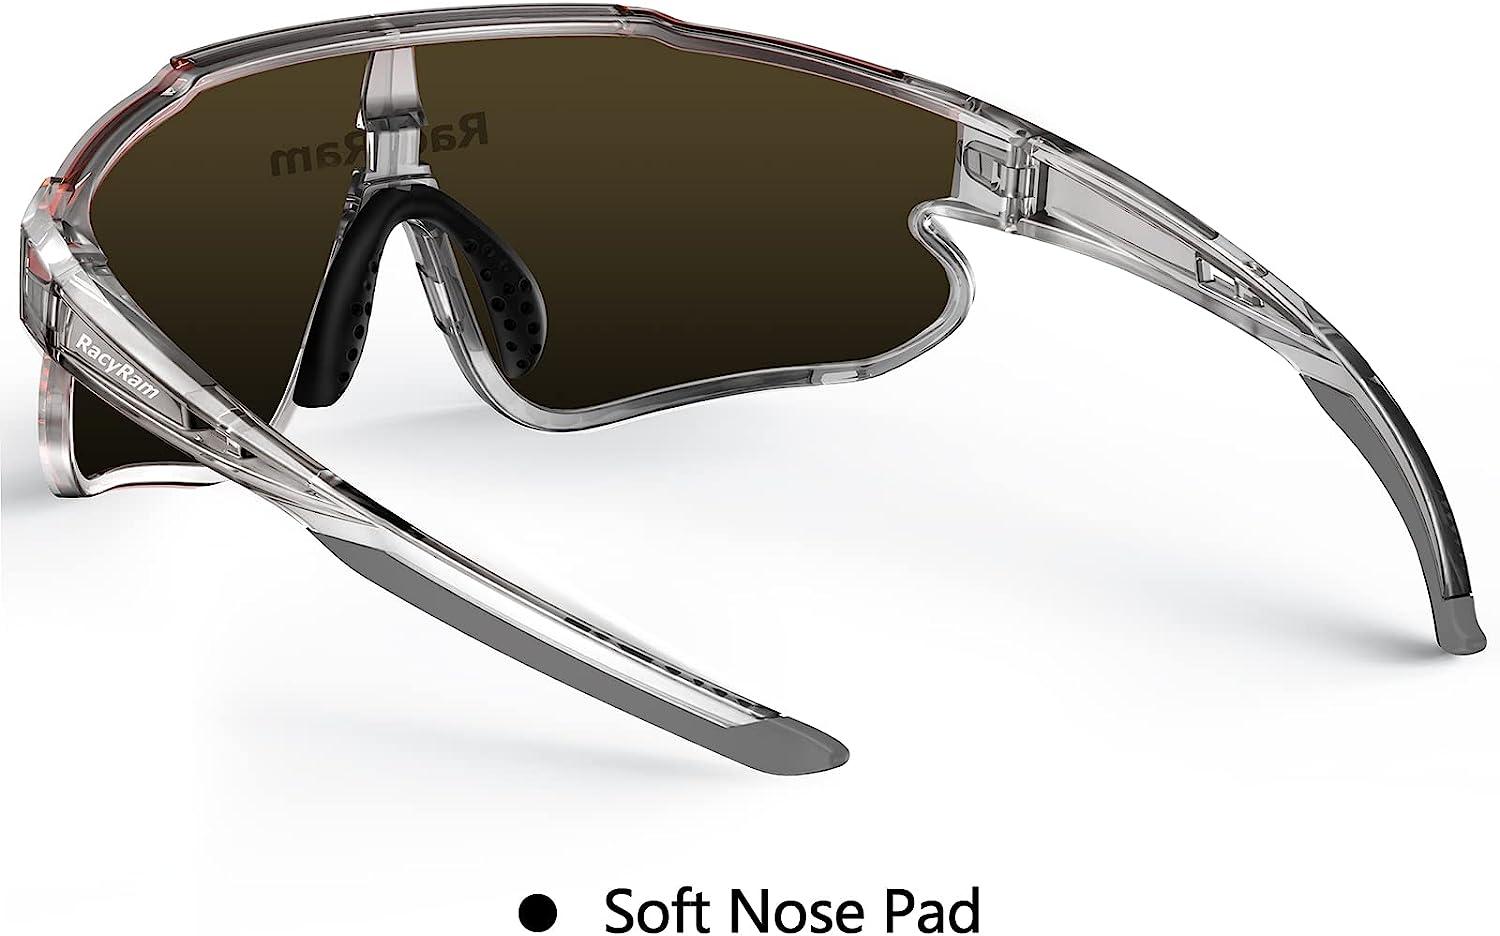 RacyRam Polarized Sunglasses for Men Women, UV400 Protection Sport Glasses  for Baseball, Cycling, Running, Softball Non-polarized Red